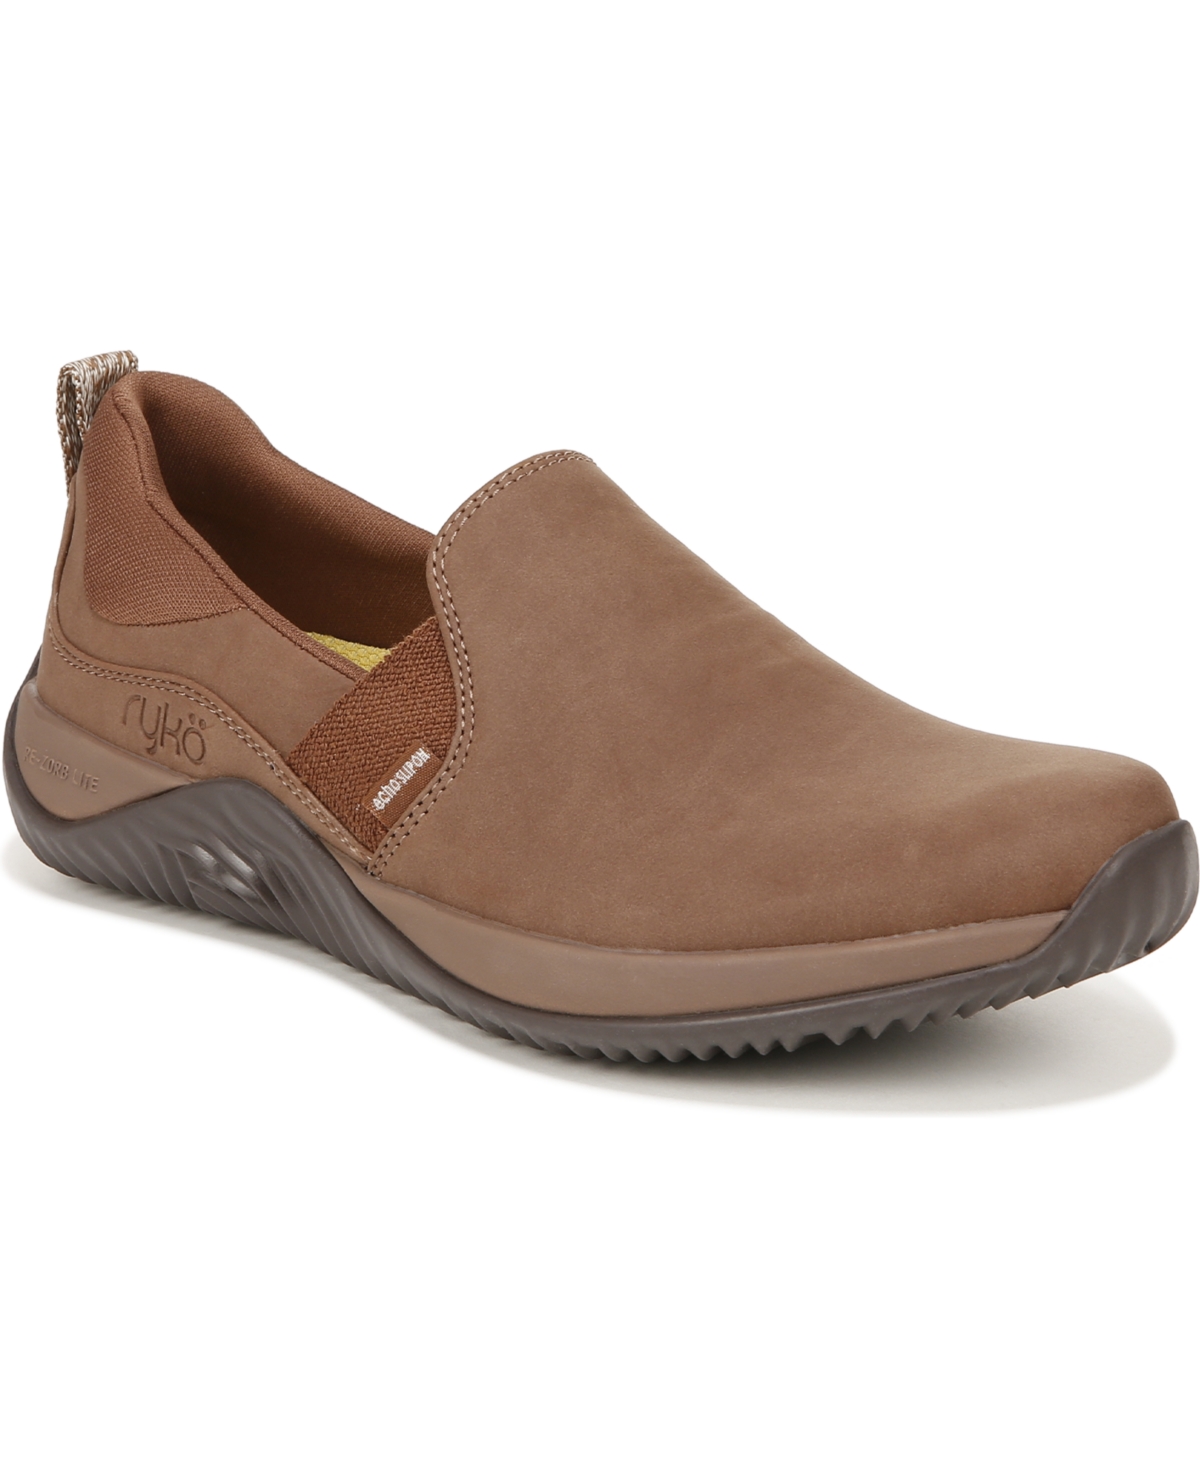 Women's Echo Slip-On Sneakers - Brown Faux Leather